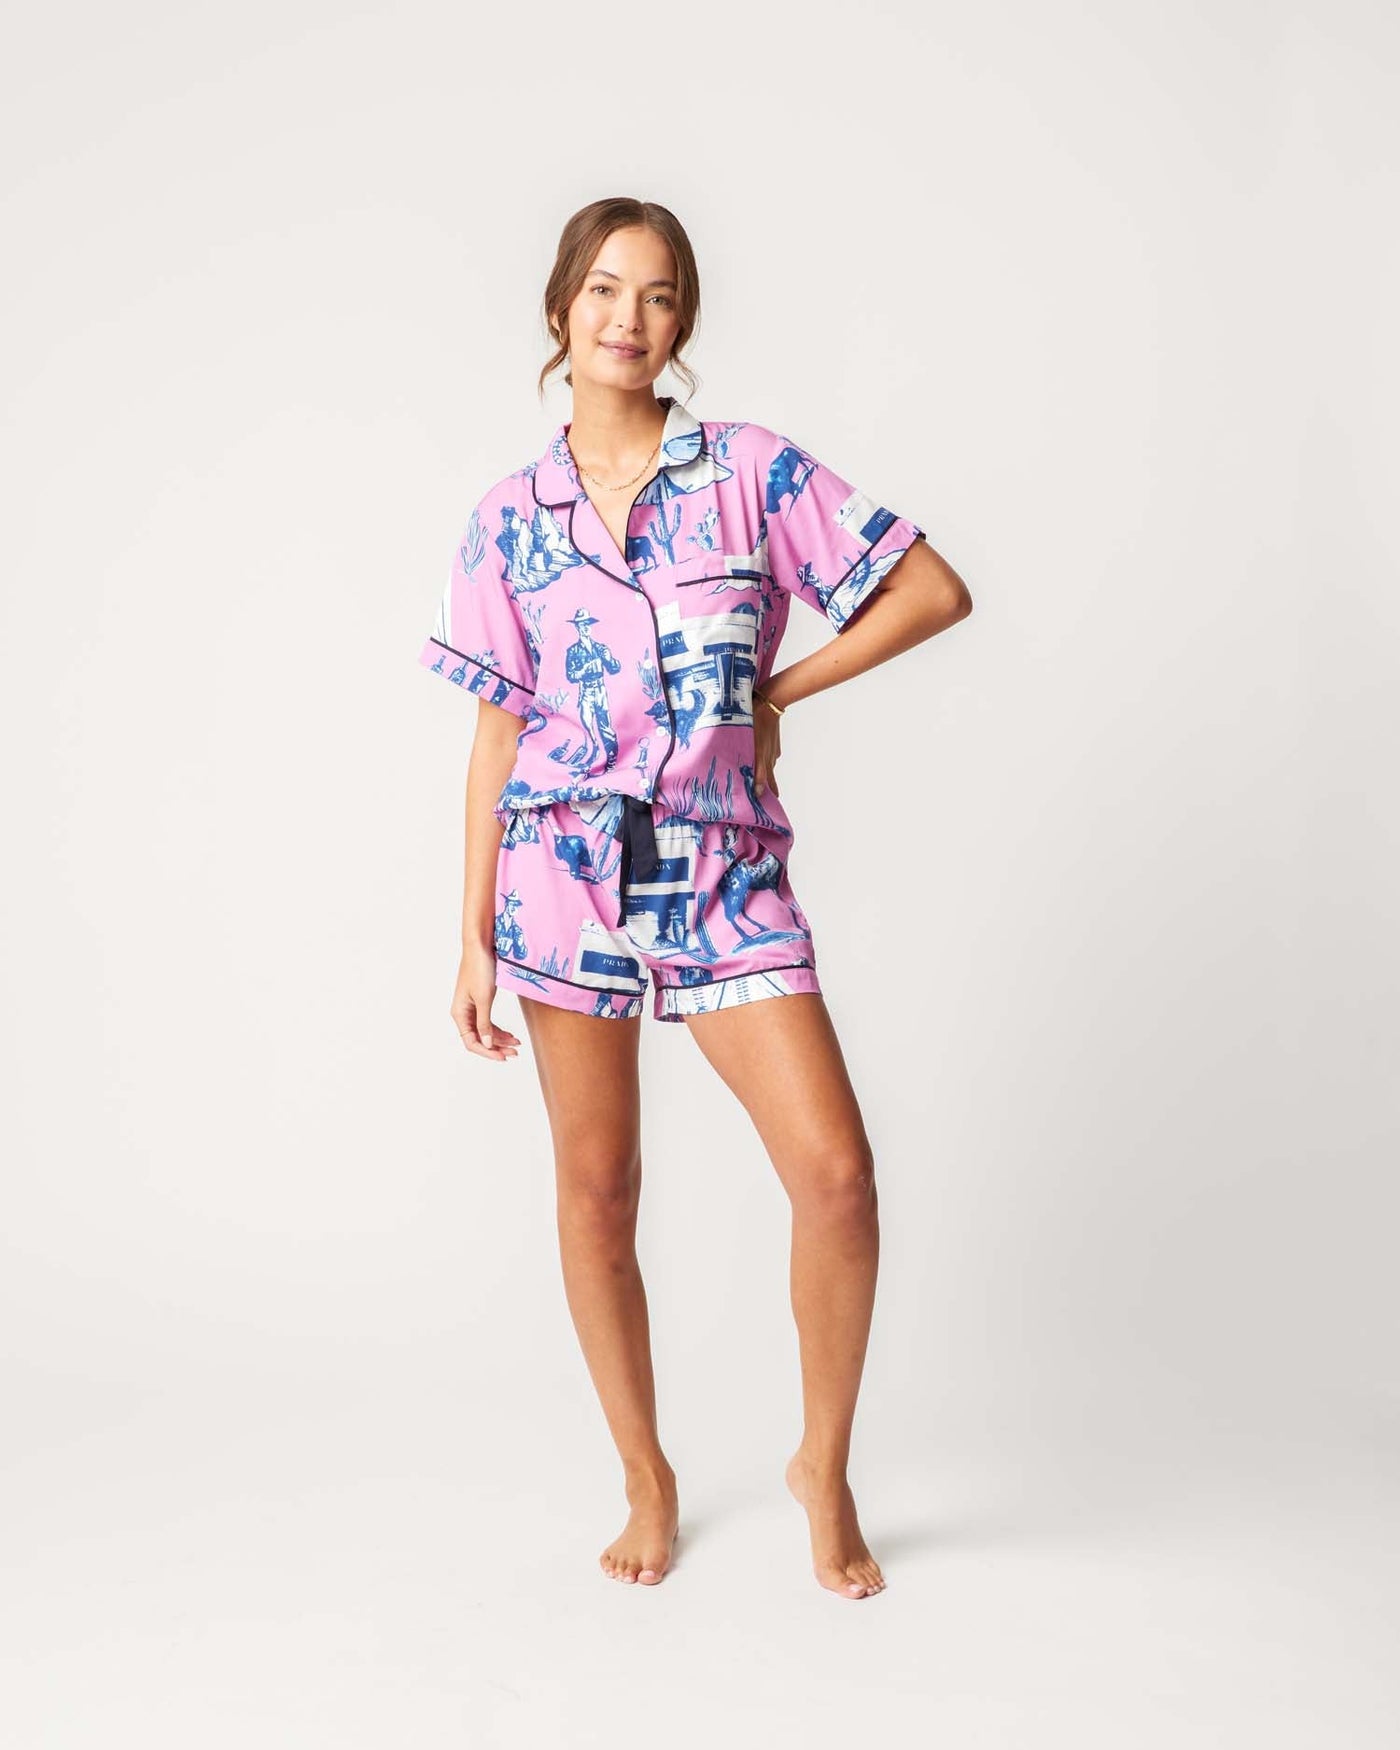 Marfa Toile Pajama Shorts Set Pajama Set Katie Kime